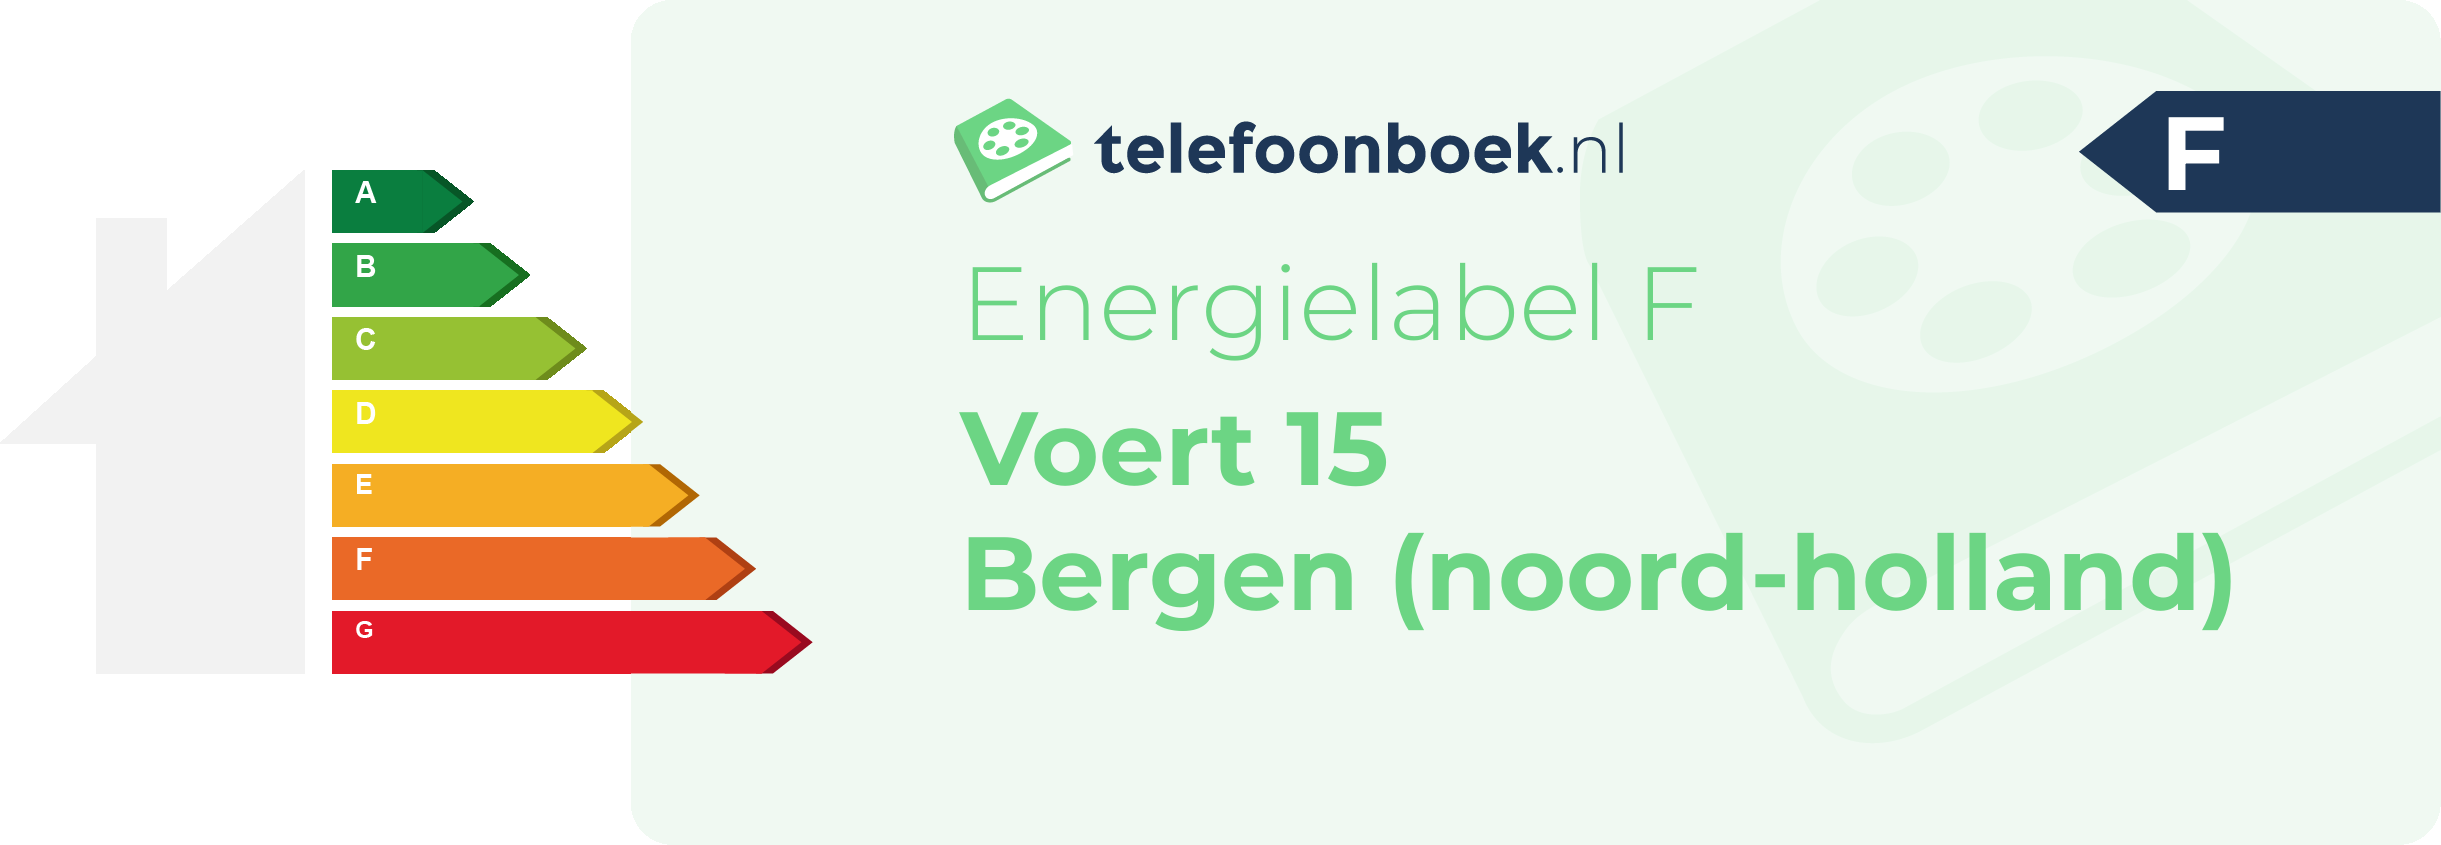 Energielabel Voert 15 Bergen (Noord-Holland)